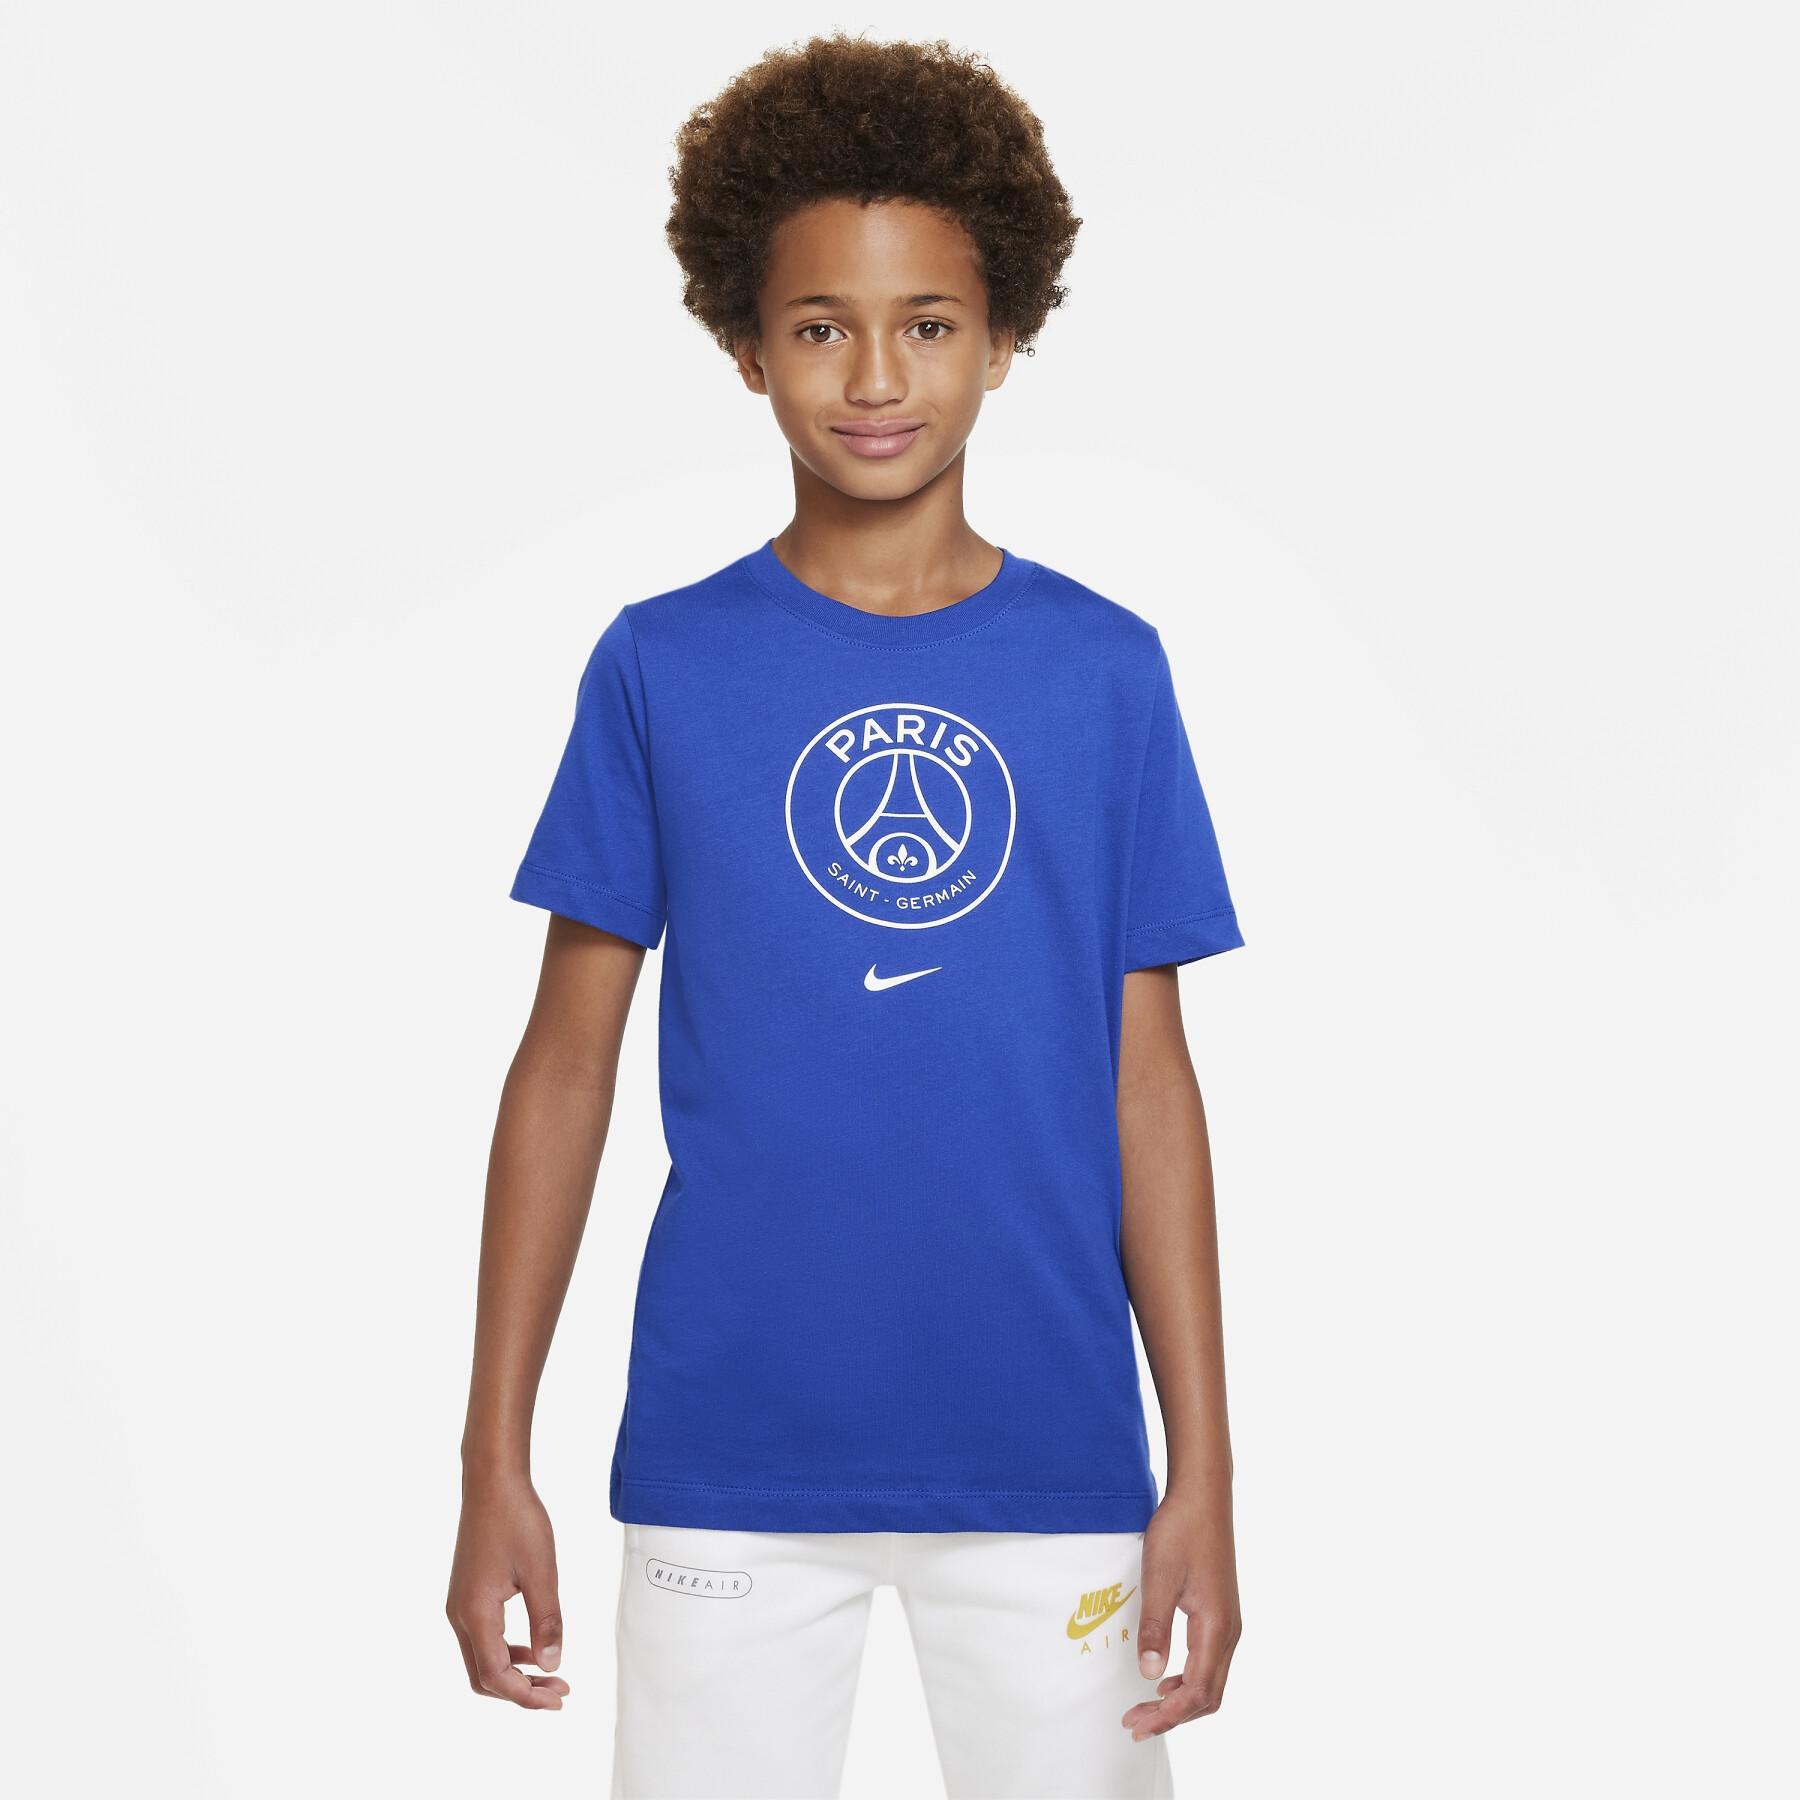 Kinder T-Shirt PSG Crest 2022/23